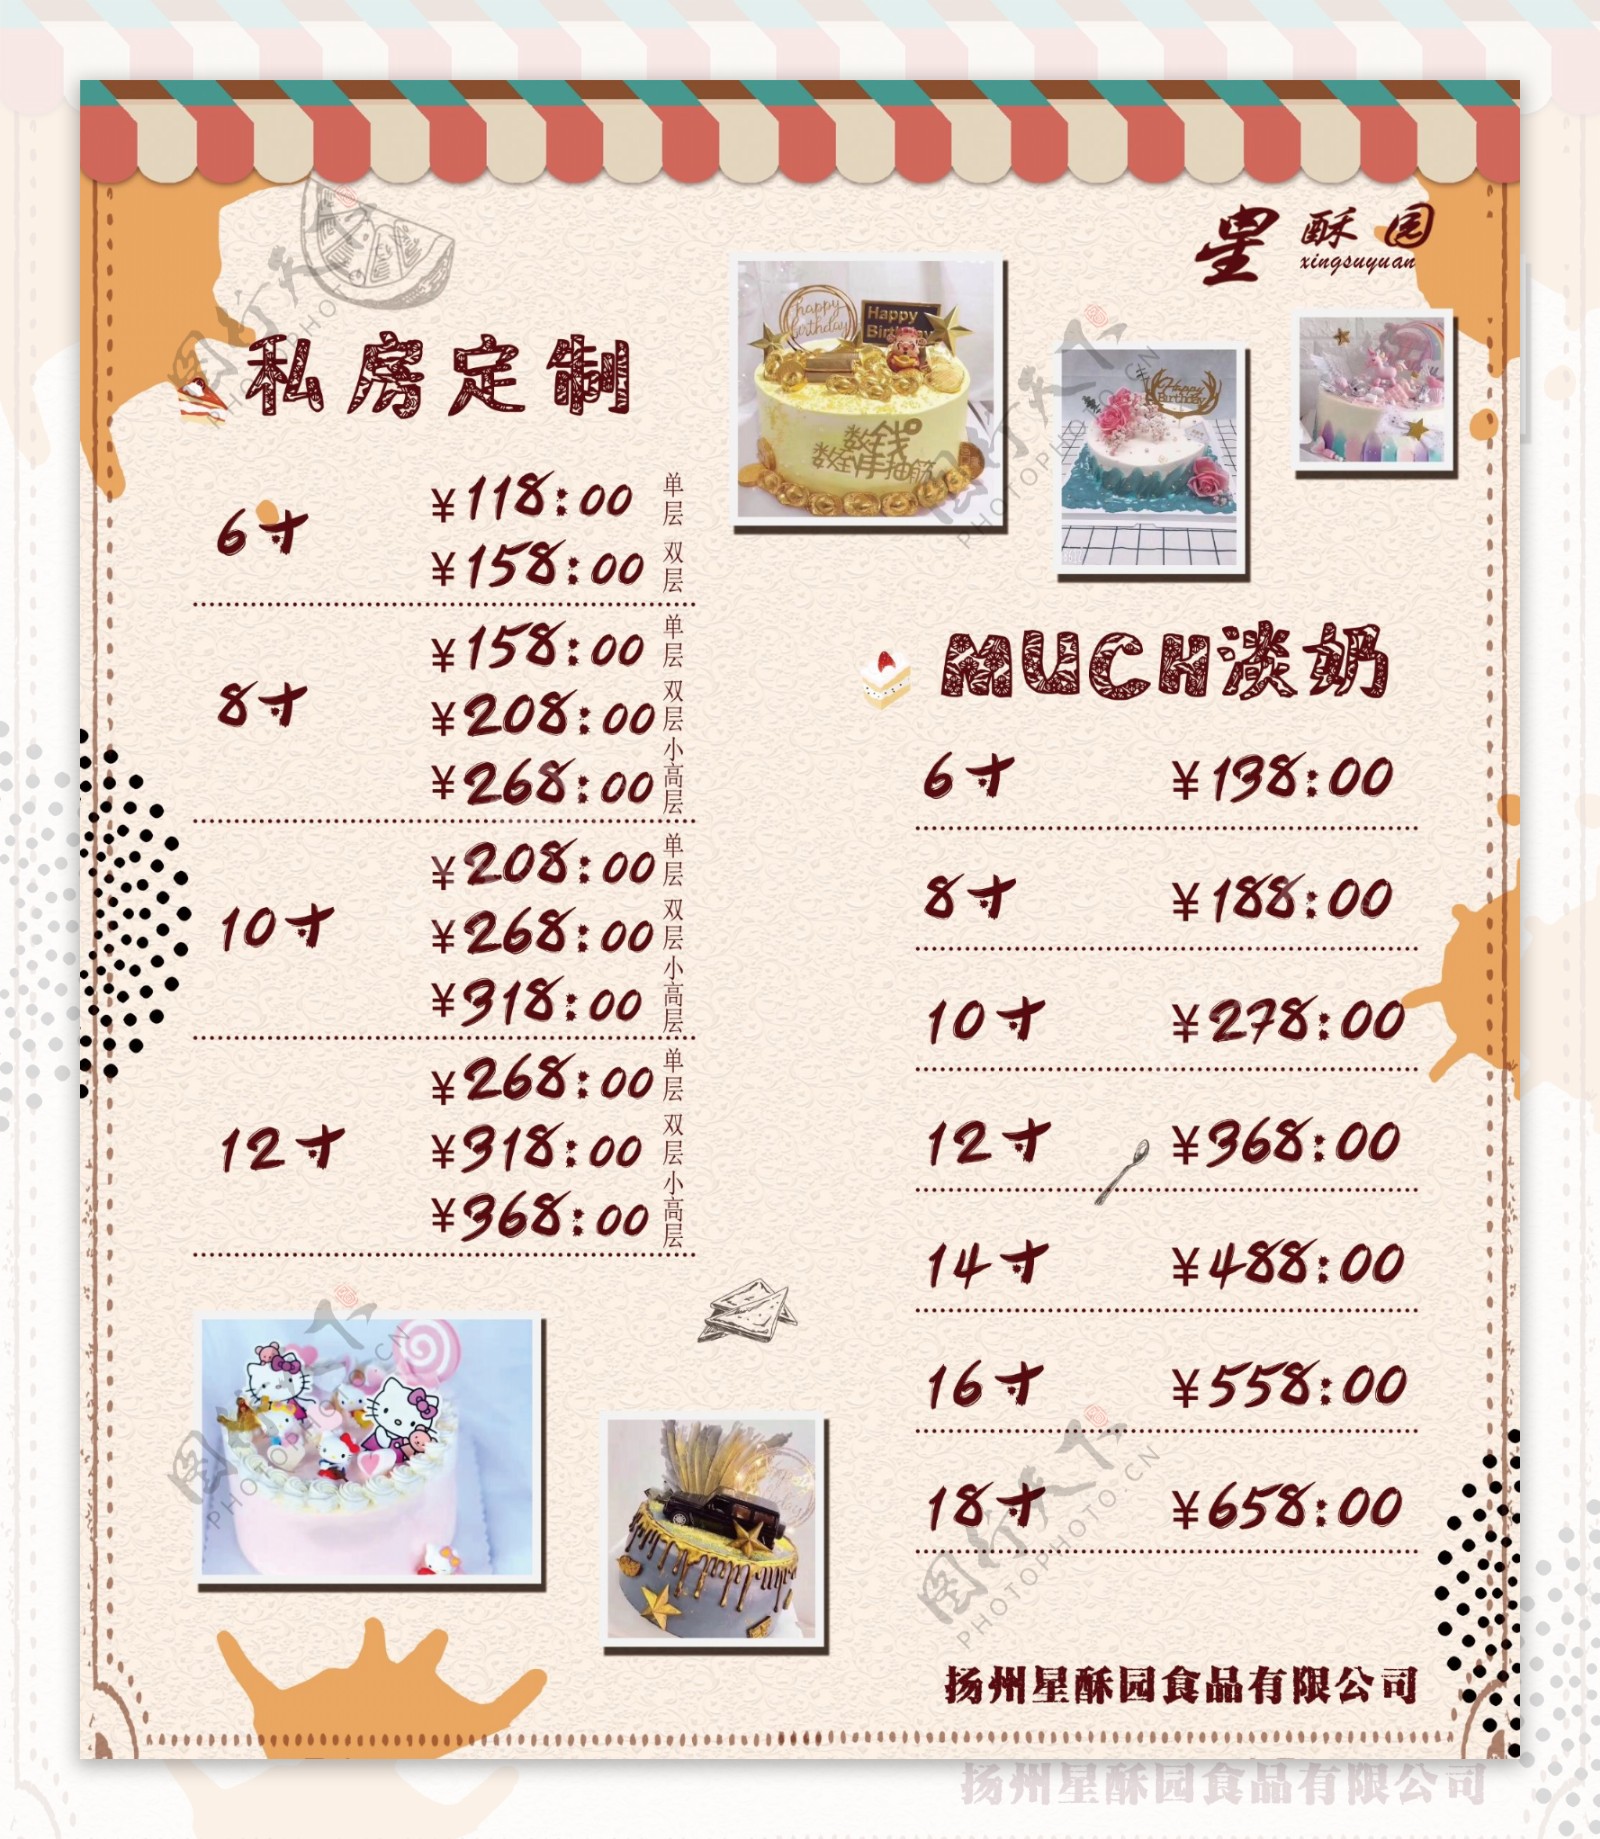 上海的老字号红宝石蛋糕好吃吗？ - 知乎